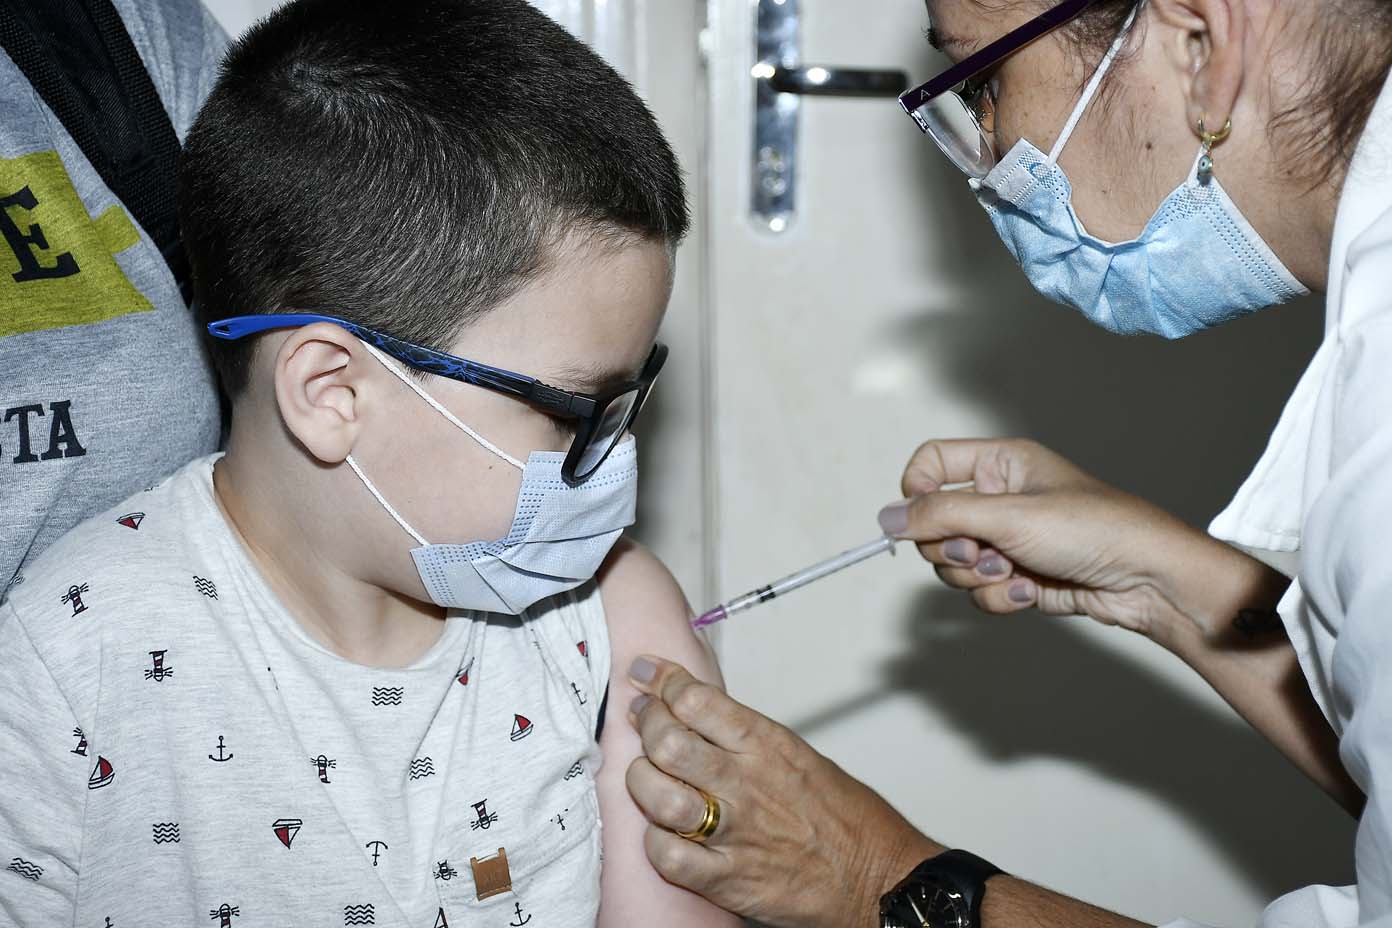 Meninos de 11 anos serão vacinados contra Covid-19 nesta quinta em Nova Iguaçu